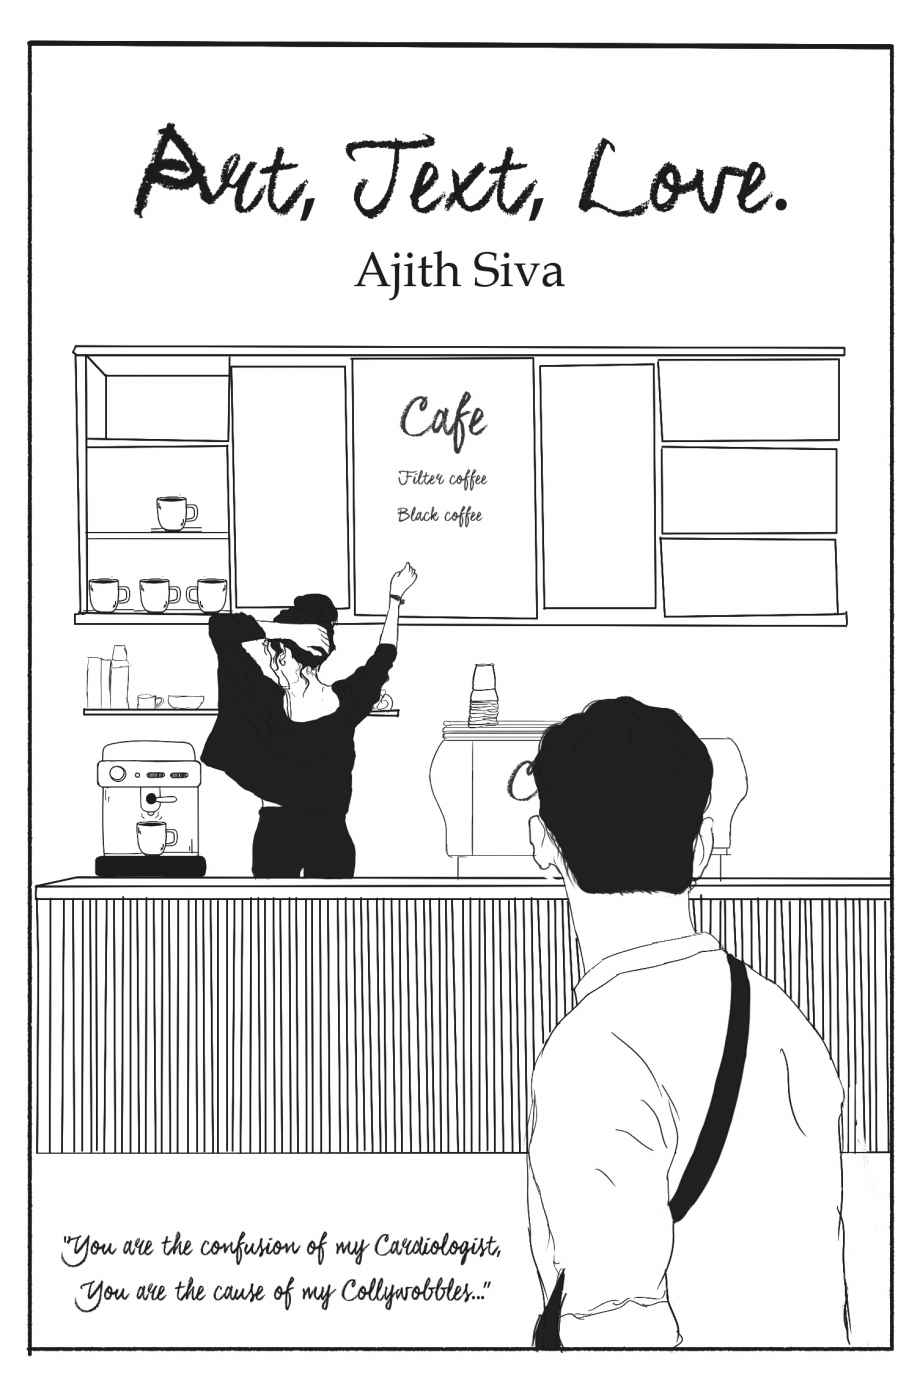 FREE: Art, Text, Love. by Ajith Siva